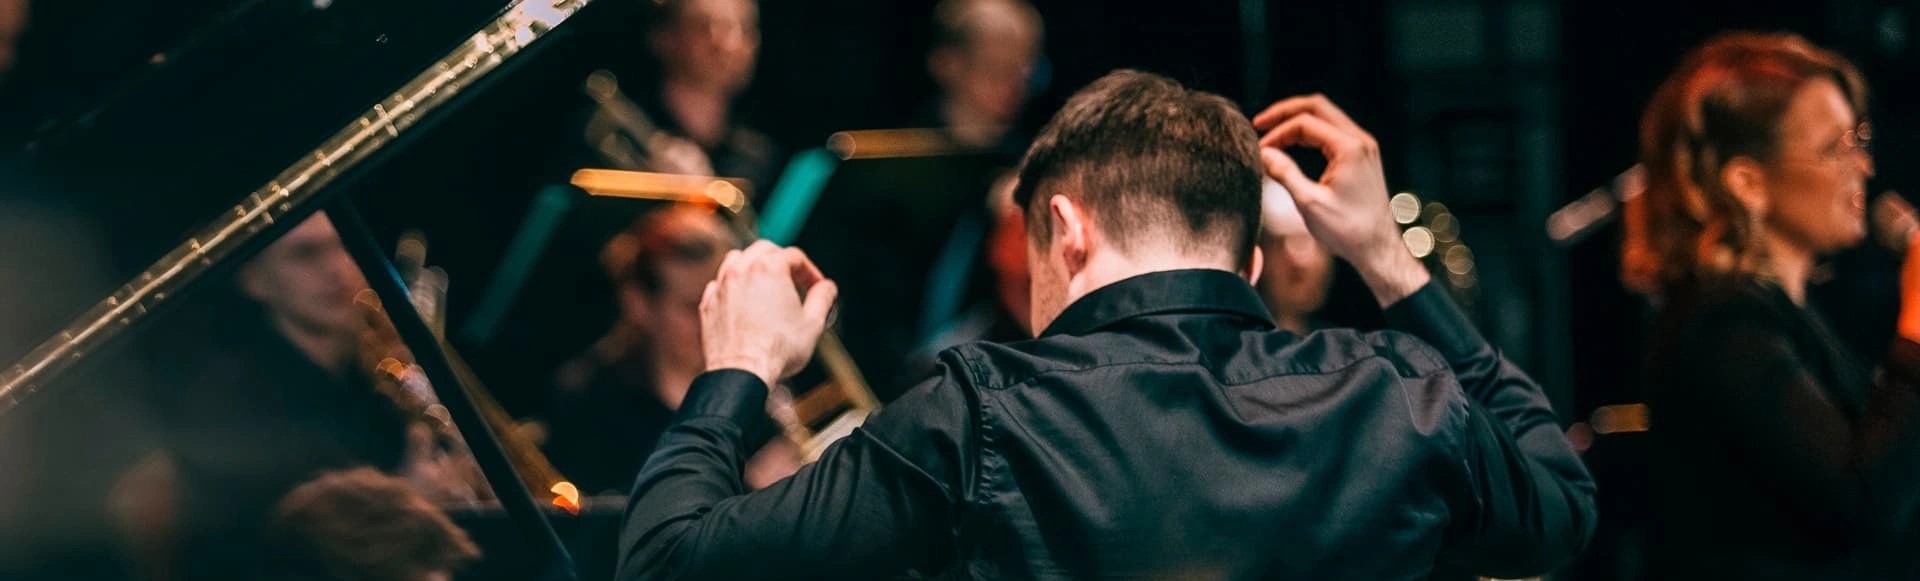 Ханс Циммер VS Джон Уильямс: невероятное звуковое путешествие с оркестром под звездным небом в Севкабель Порт!